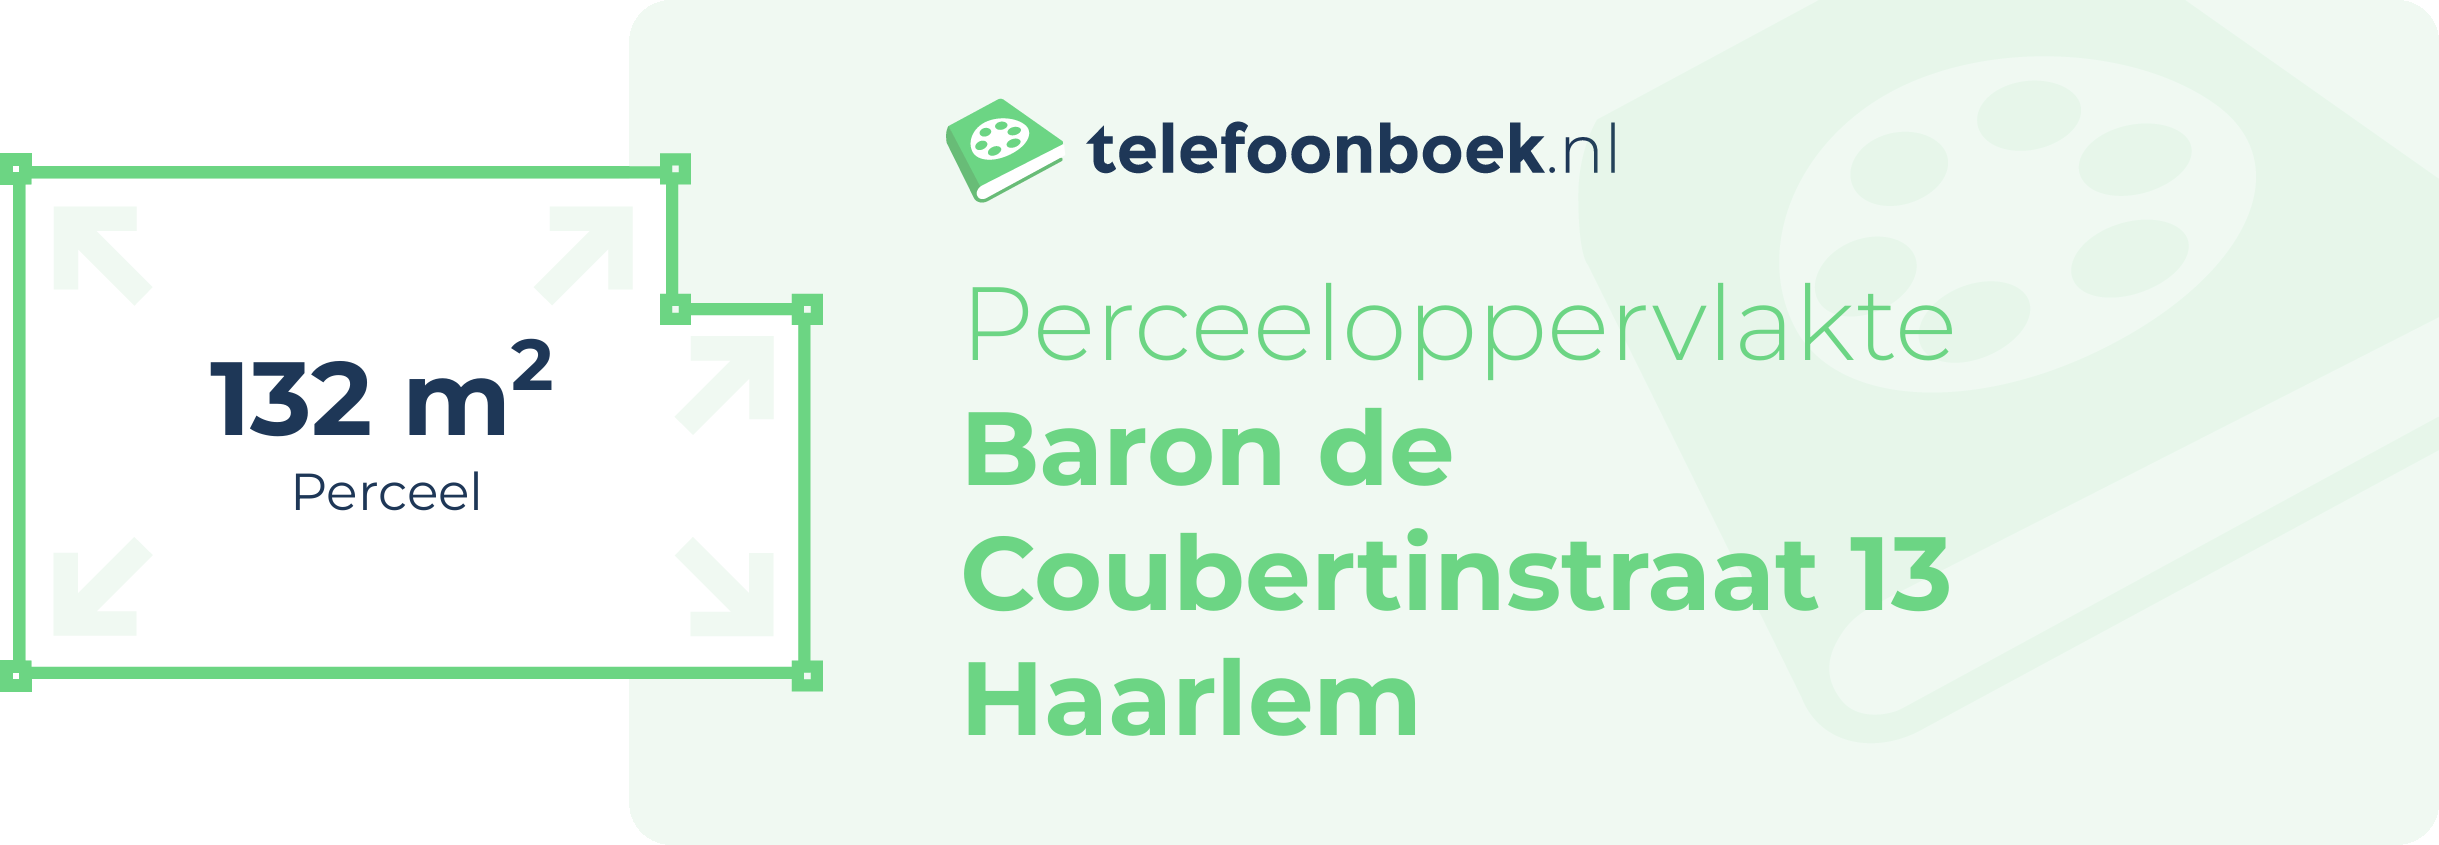 Perceeloppervlakte Baron De Coubertinstraat 13 Haarlem